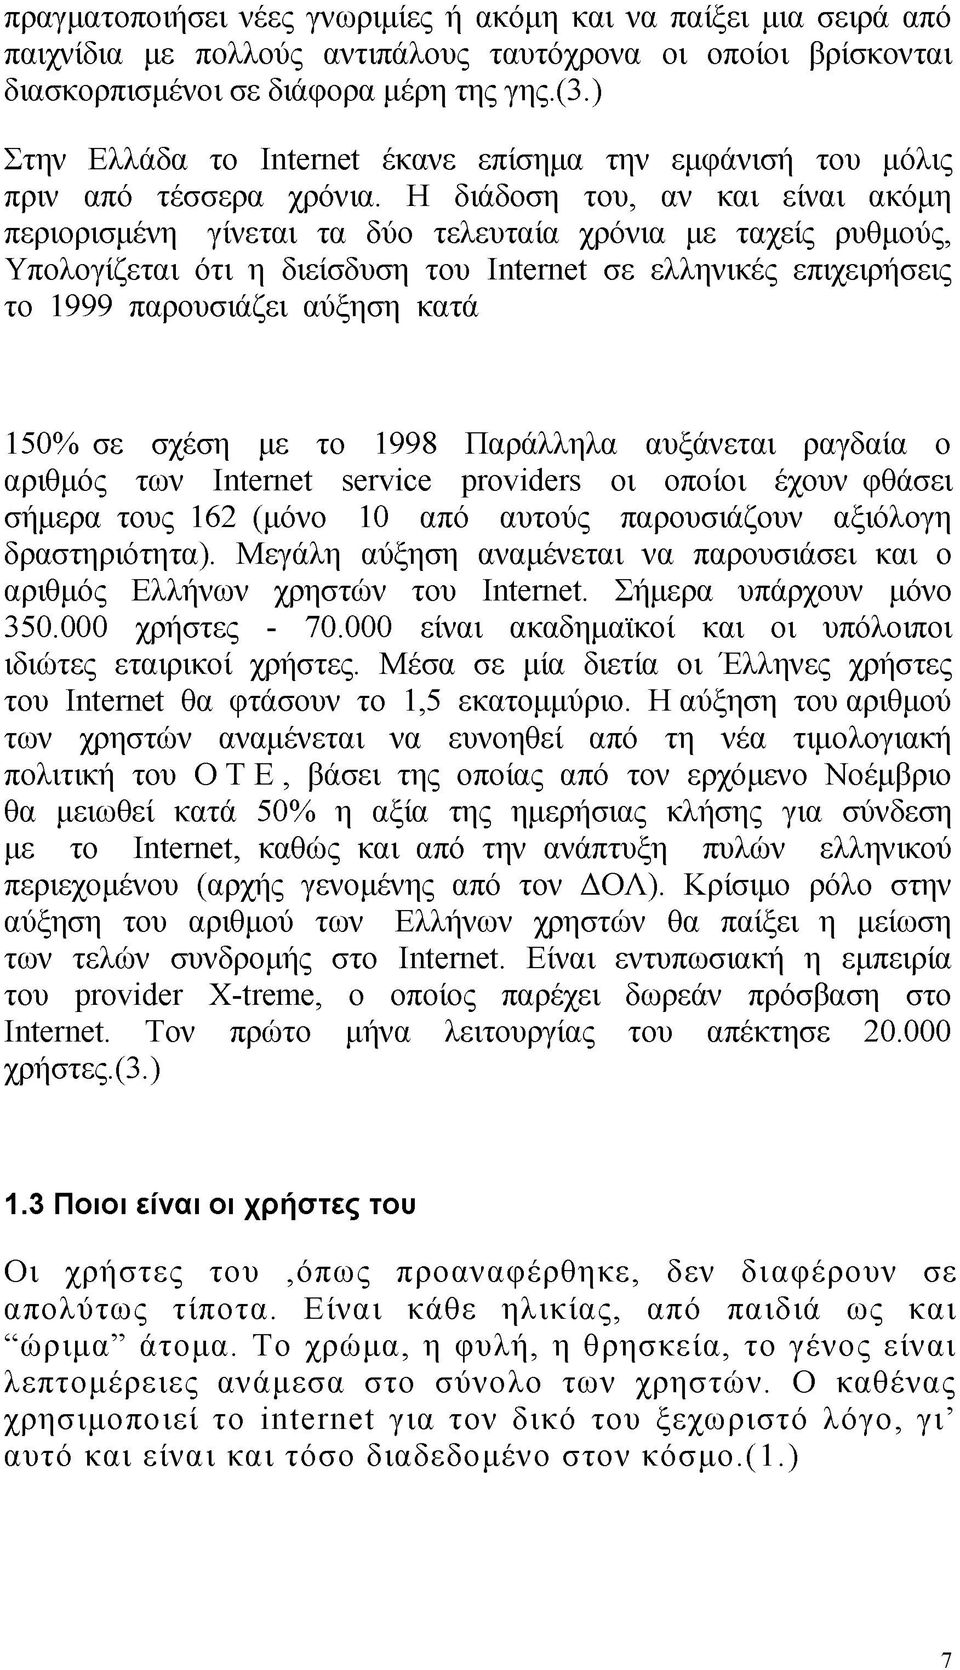 Η διάδοση του, αν και είναι ακόμη περιορισμένη γίνεται τα δύο τελευταία χρόνια με ταχείς ρυθμούς, Υπολογίζεται ότι η διείσδυση του ΙΠ^Γηοί σε ελληνικές επιχειρήσεις το 1999 παρουσιάζει αύξηση κατά